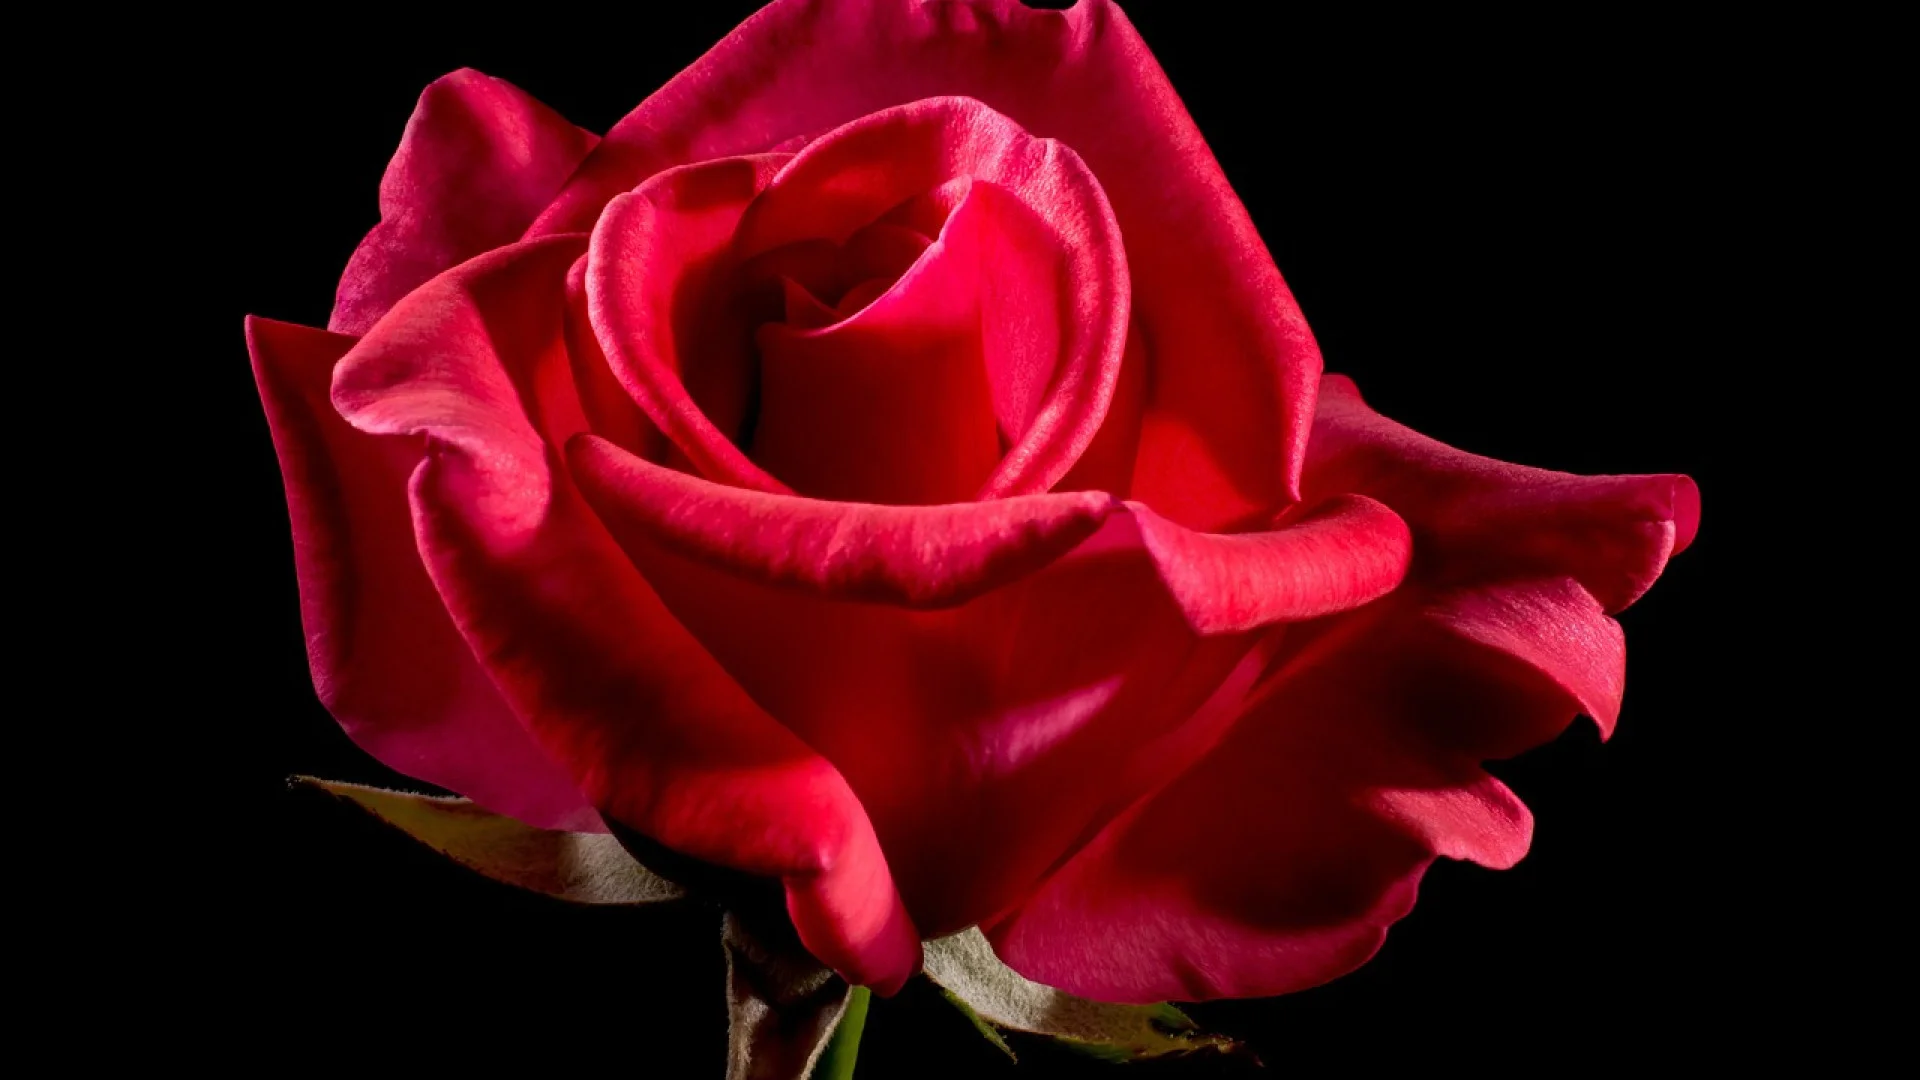 Des cadeaux magnifiques en roses pour faire plaisir et sublimer votre intérieur